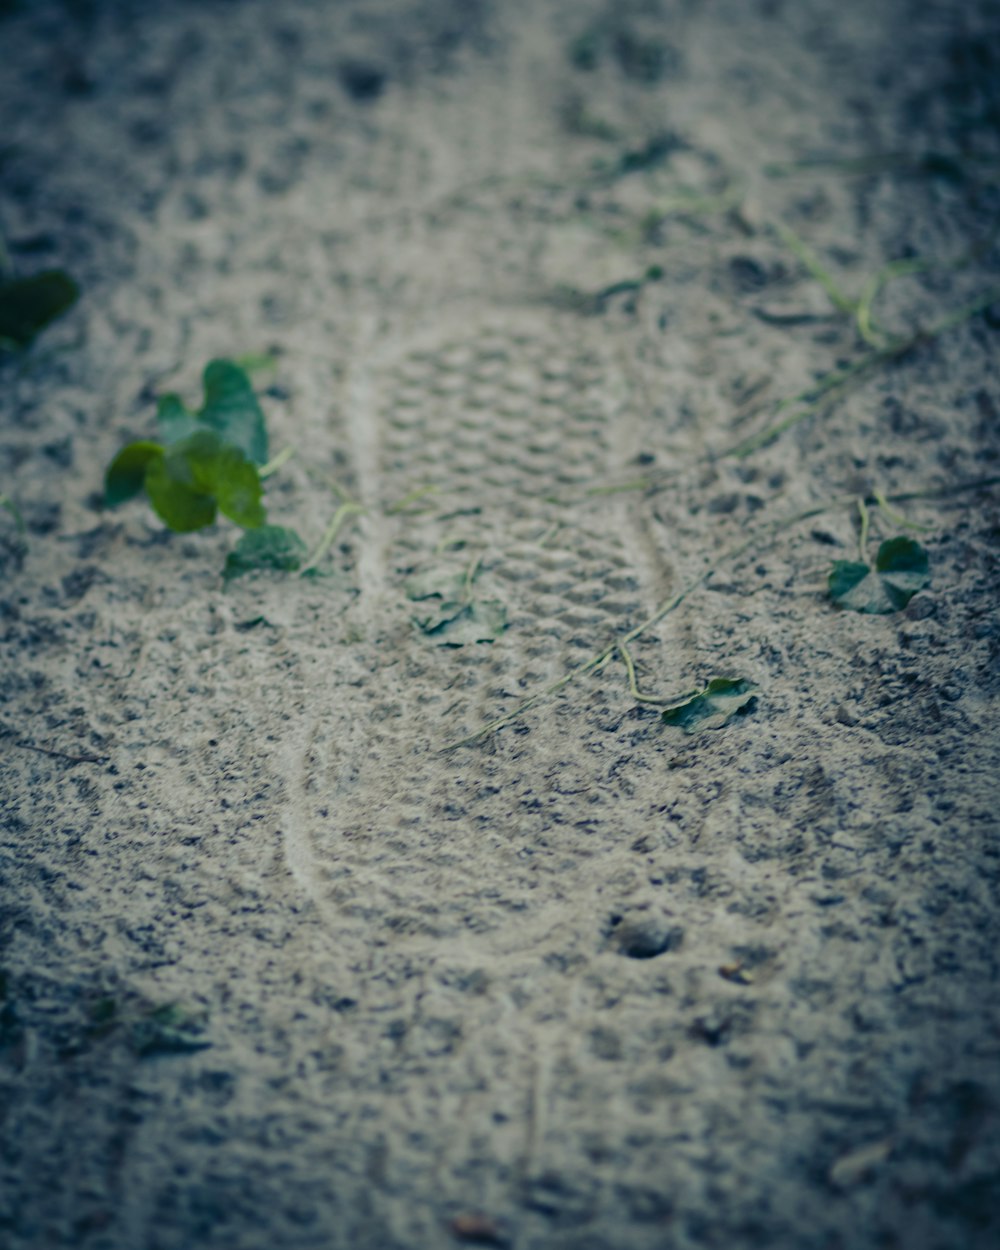 회색 모래에 녹색 잎